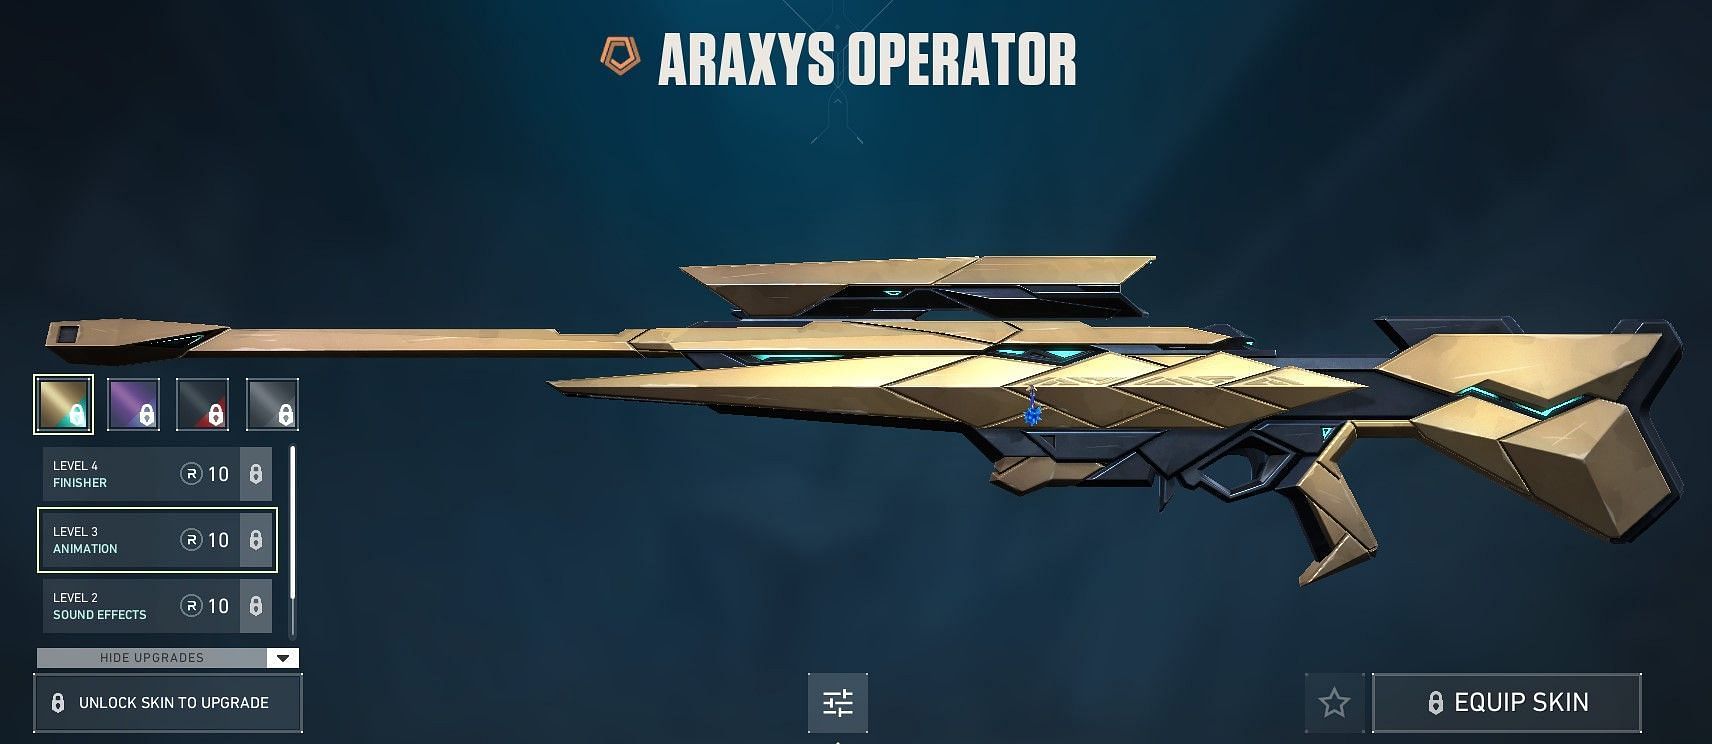 Araxys Operator (Image via Riot Games)